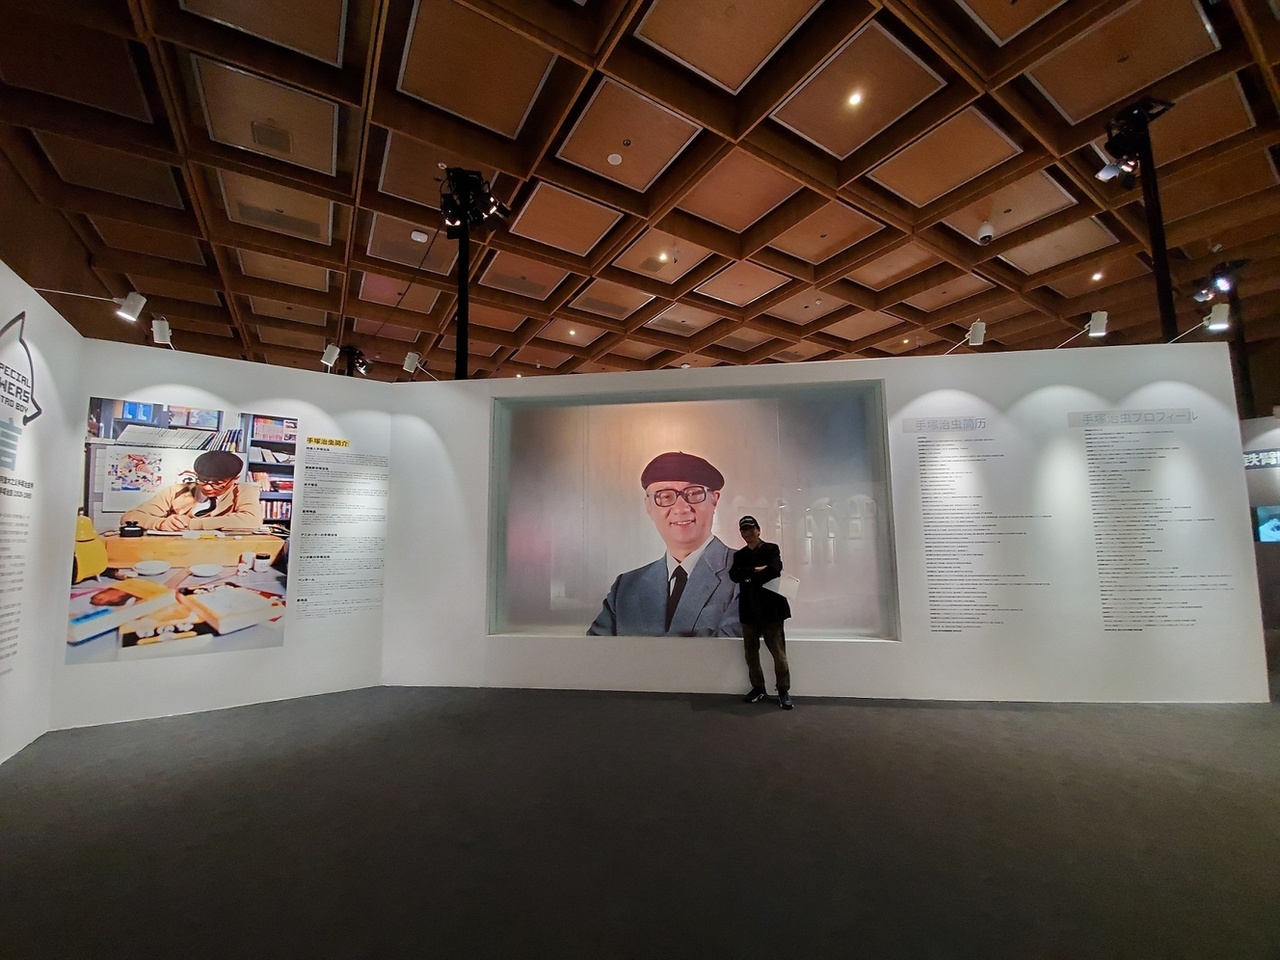 展覽展示了手塚治蟲戴著貝雷帽的經典肖像，這可能是很多人第一次見到這位「日本漫畫之神」的真人照片。